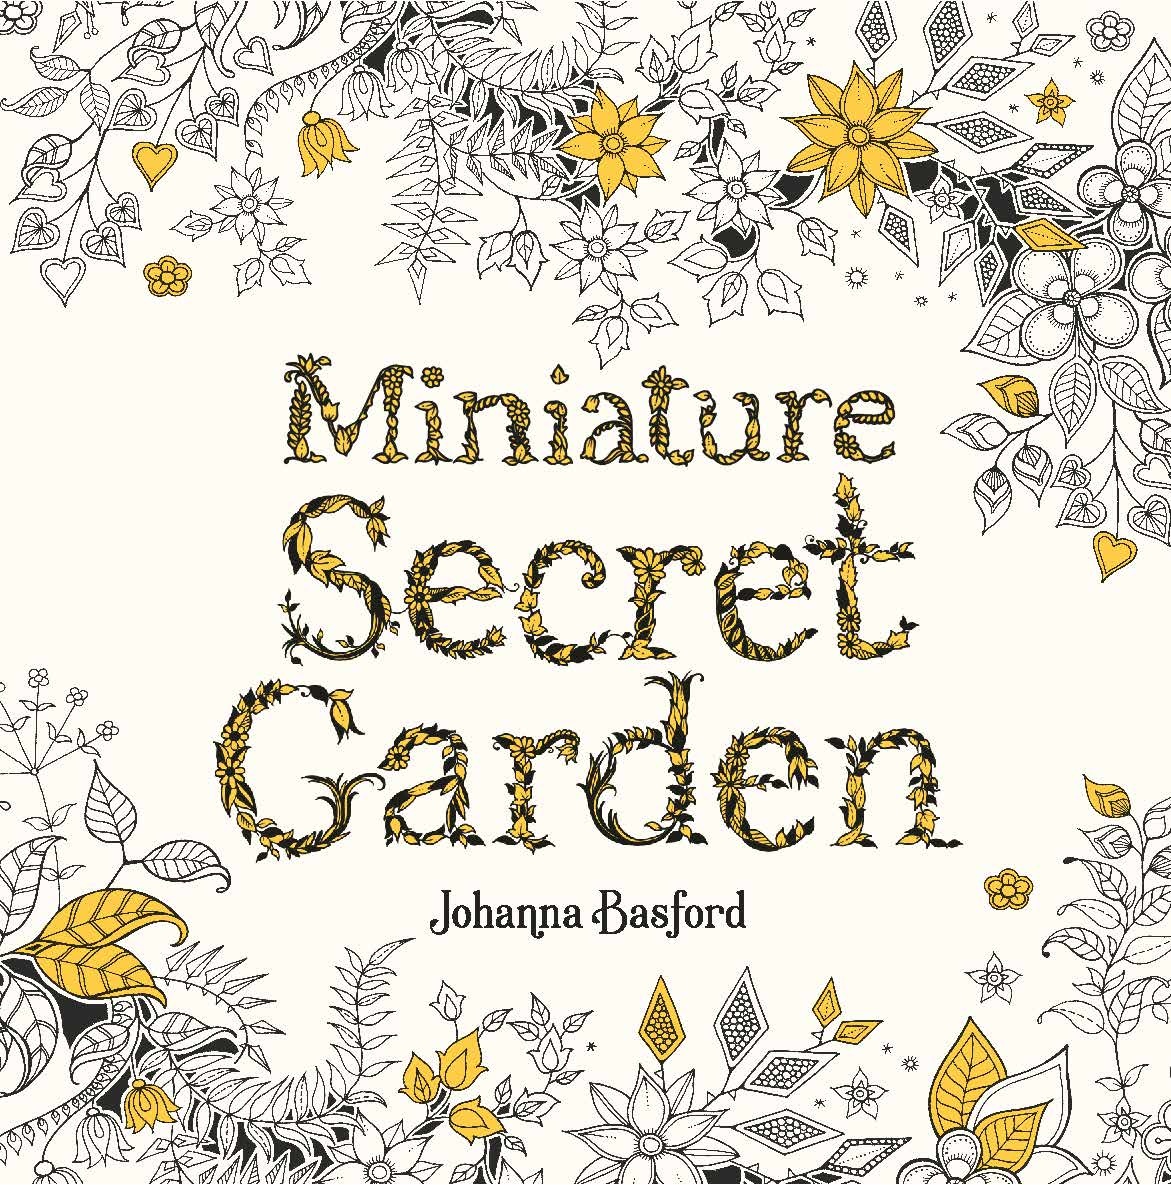 johanna-basford-miniature-secret-garden.jpg